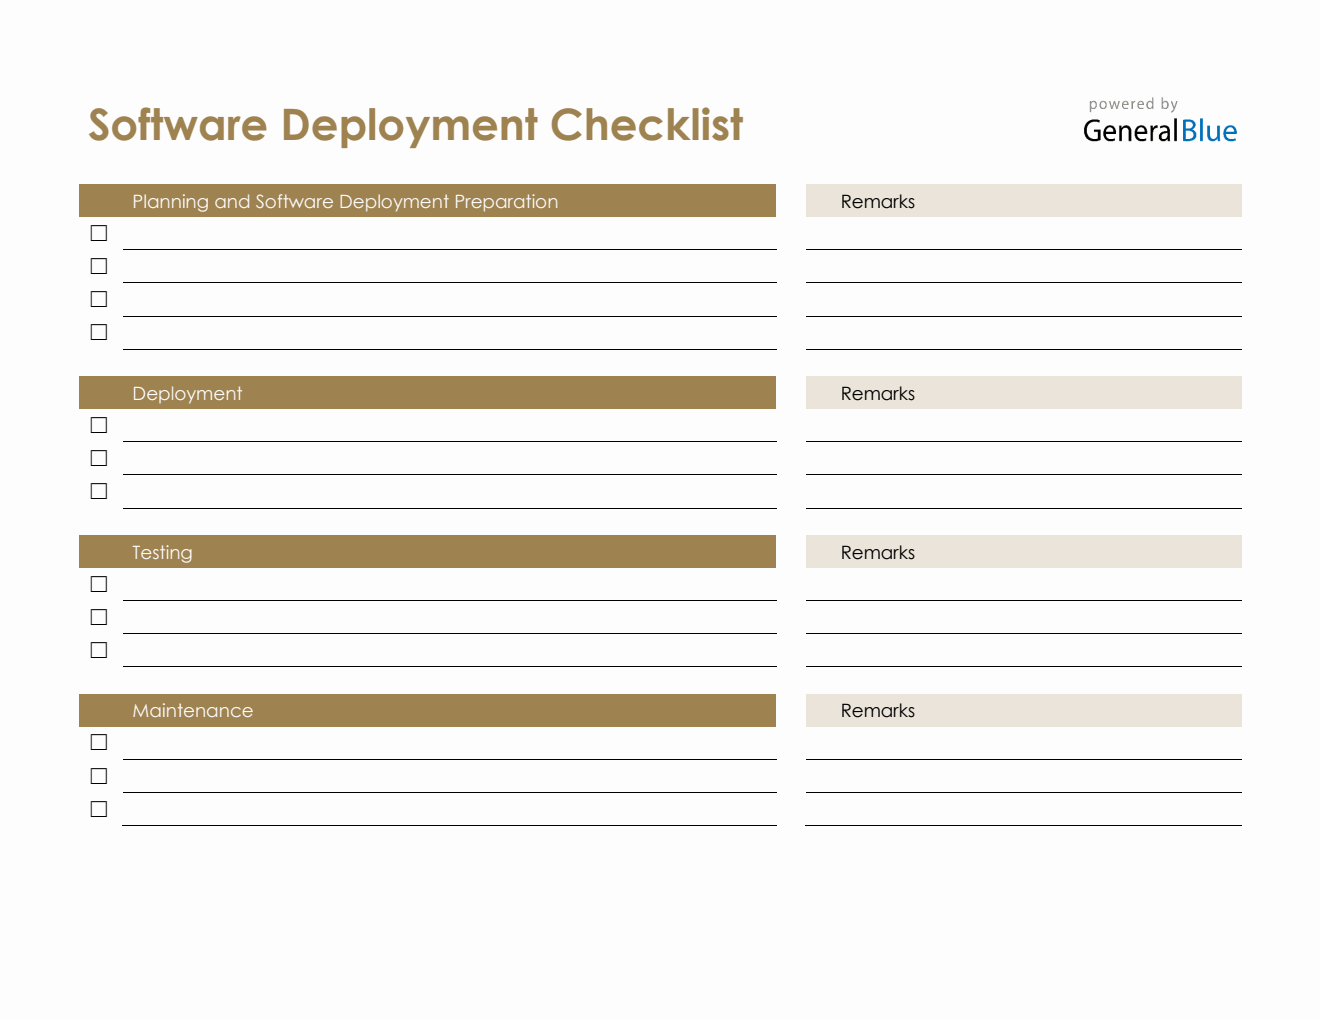 Software Deployment Checklist in Word